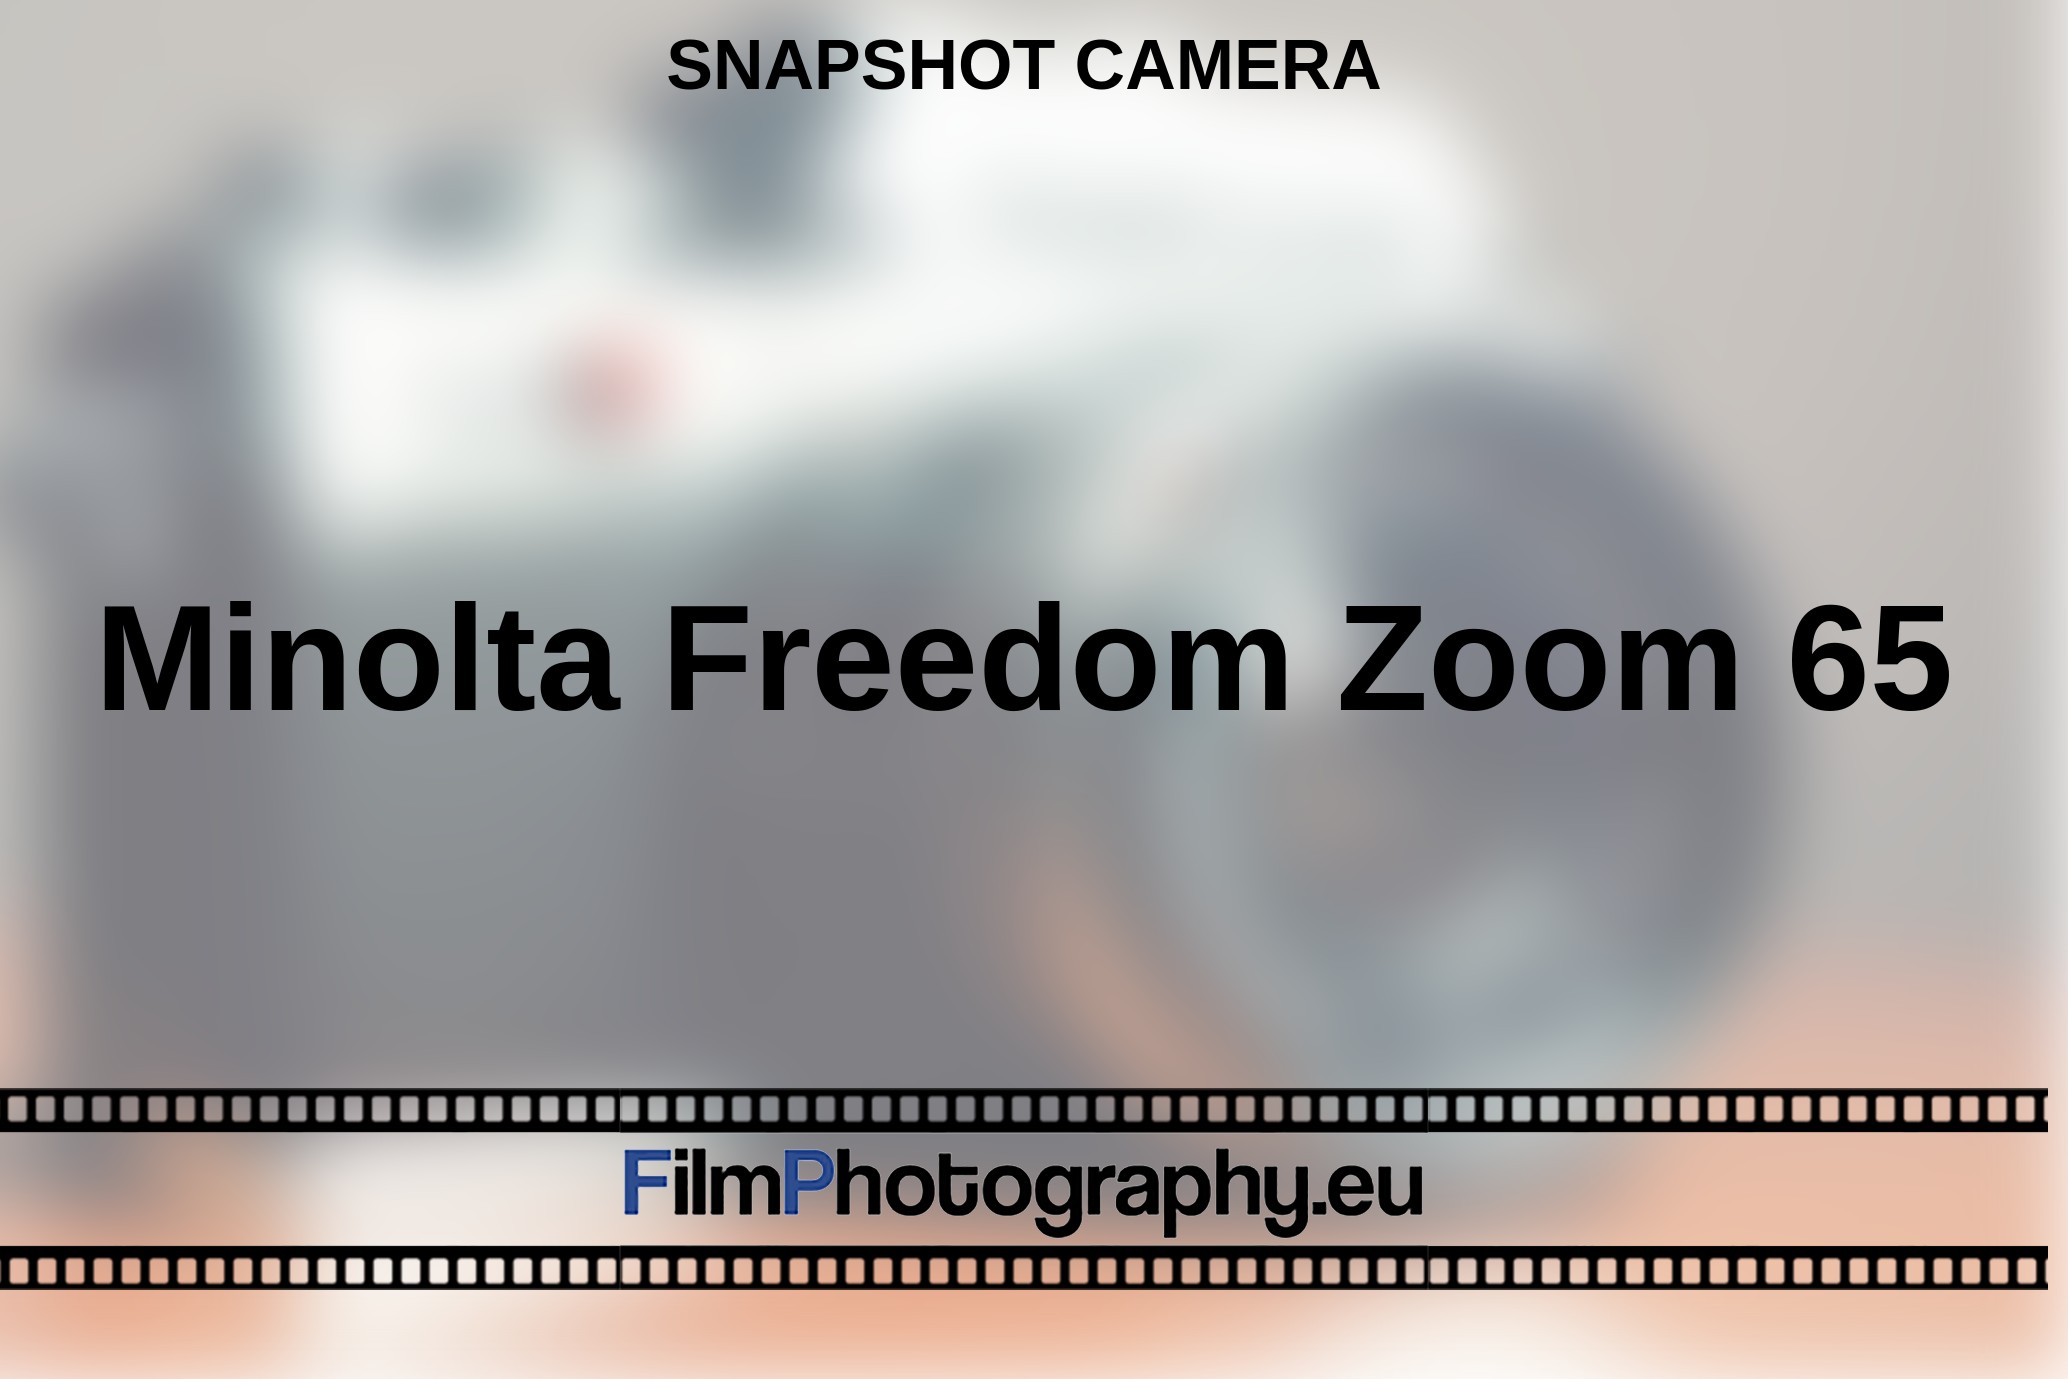 Minolta-Freedom-Zoom-65-snapshot-camera-bnv.jpg